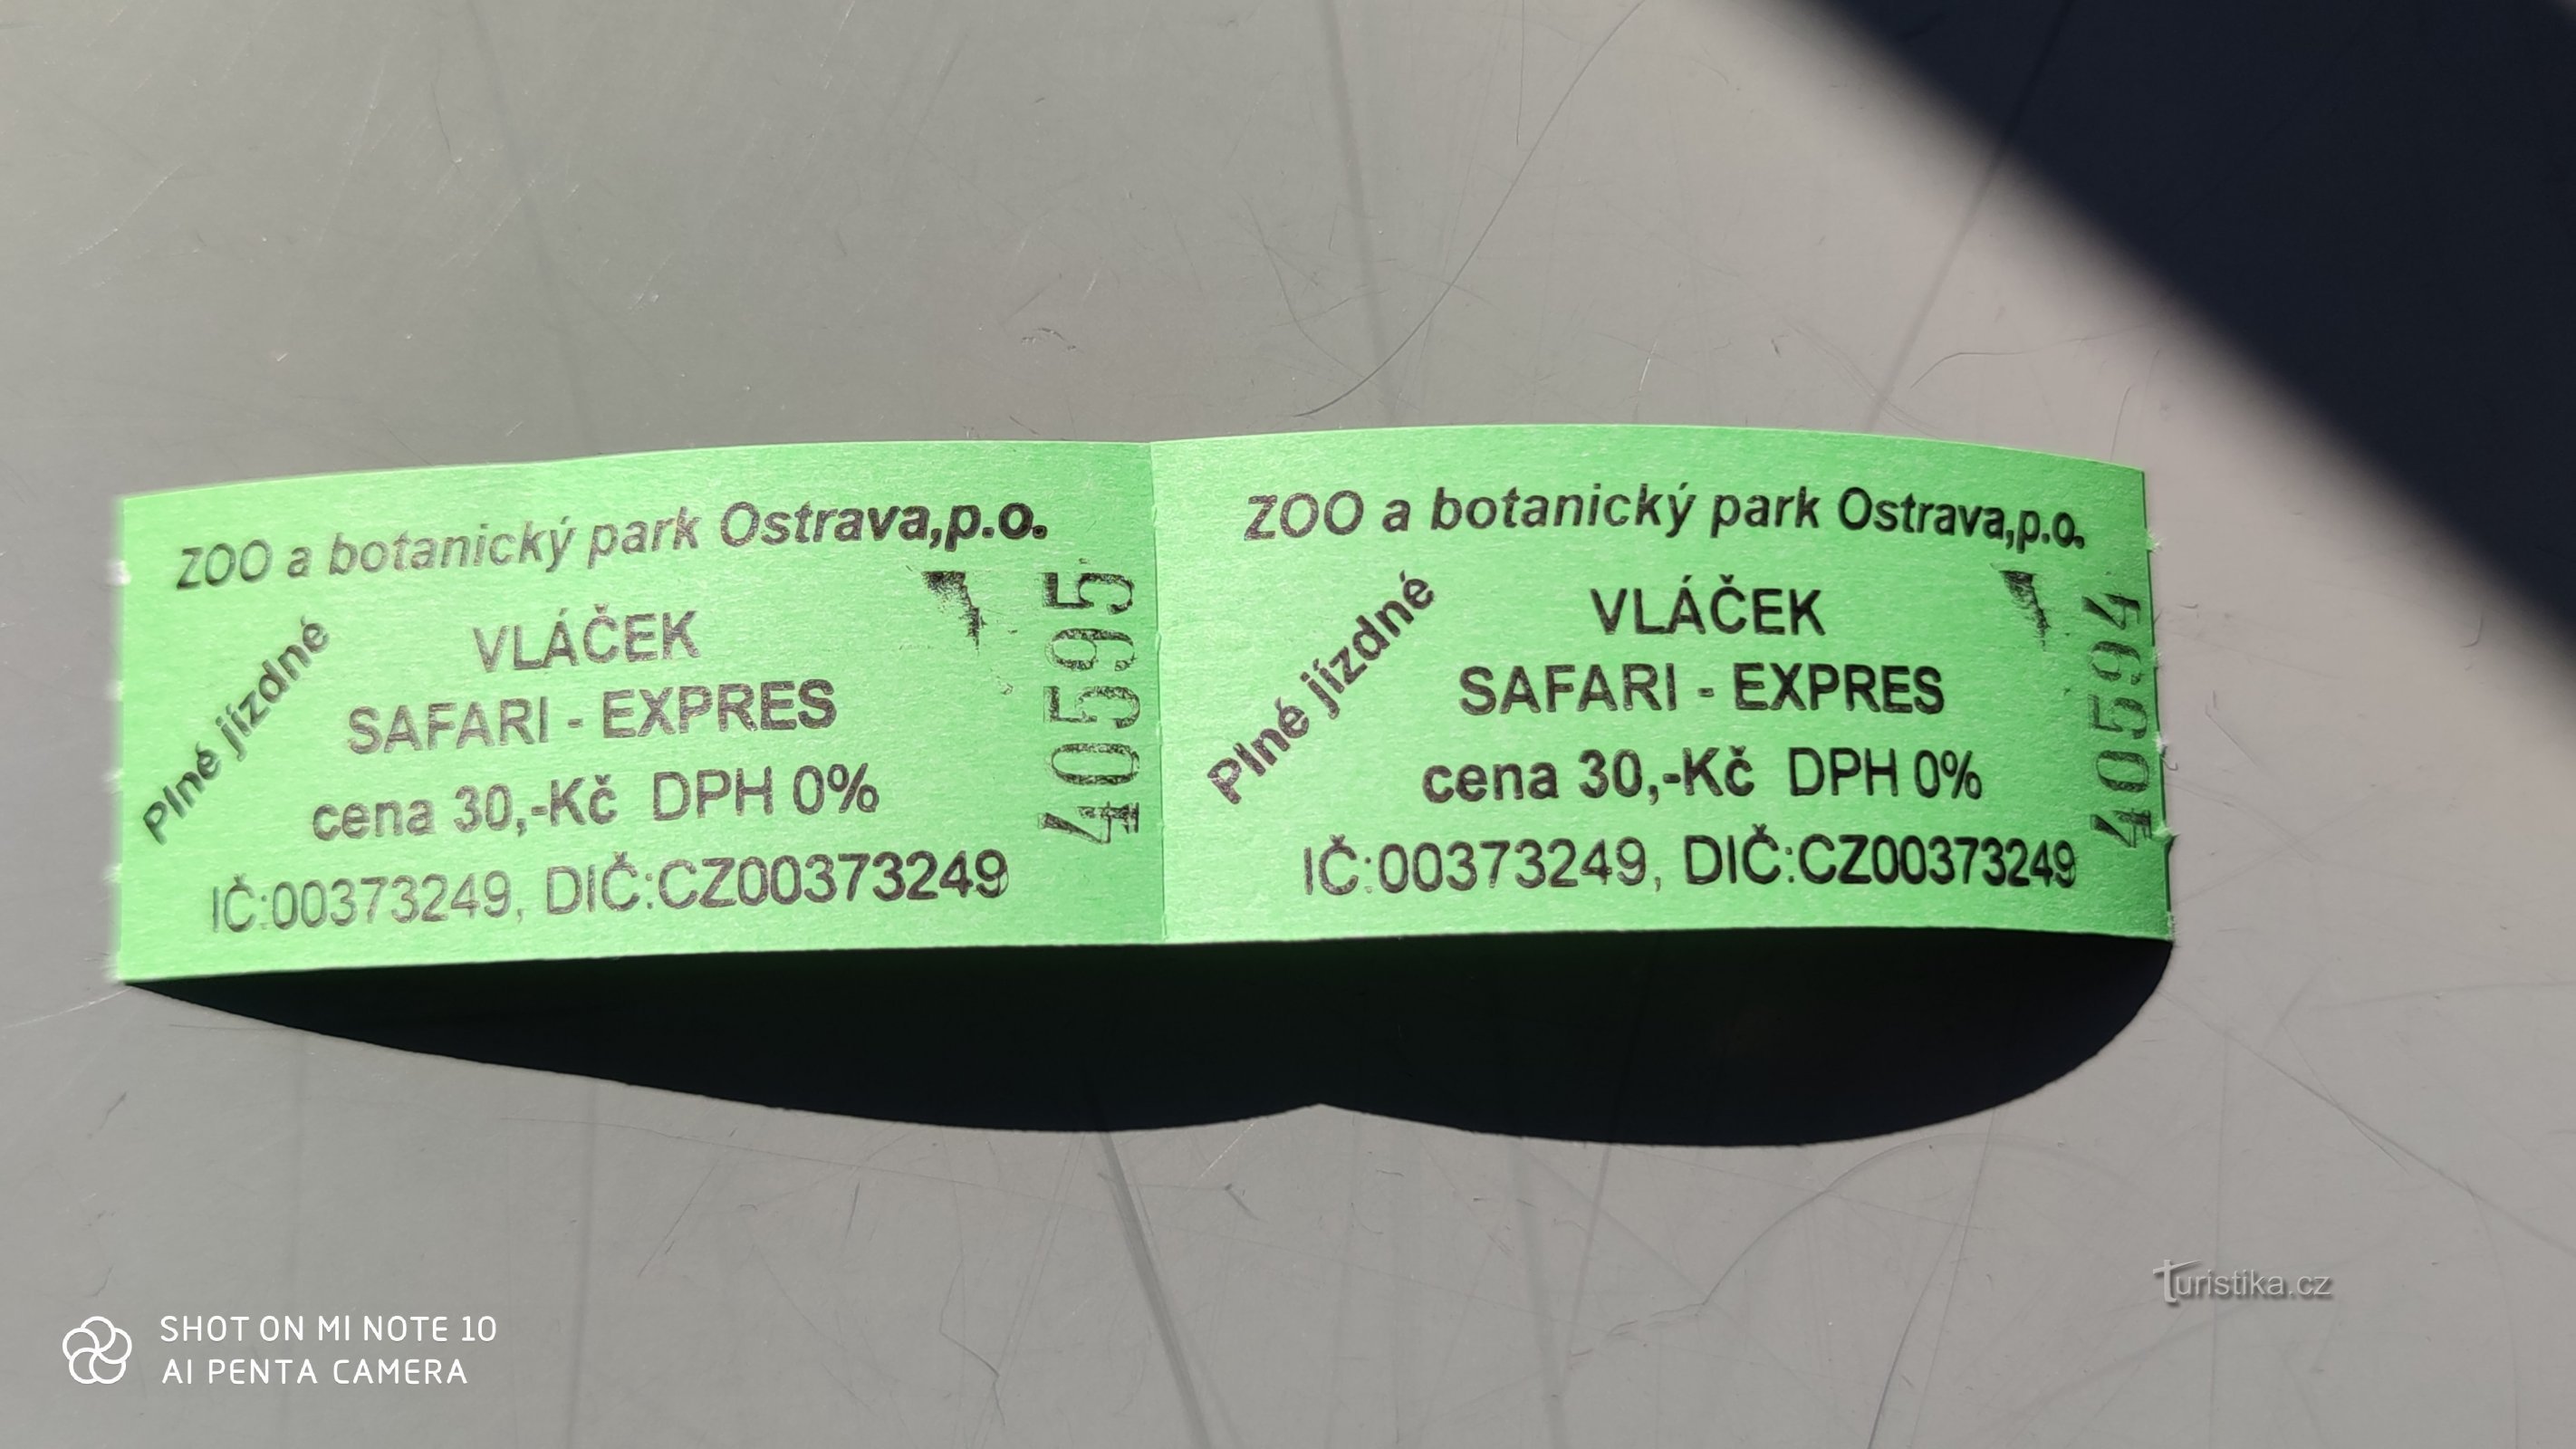 Safari expressz az Ostrava Állatkertben